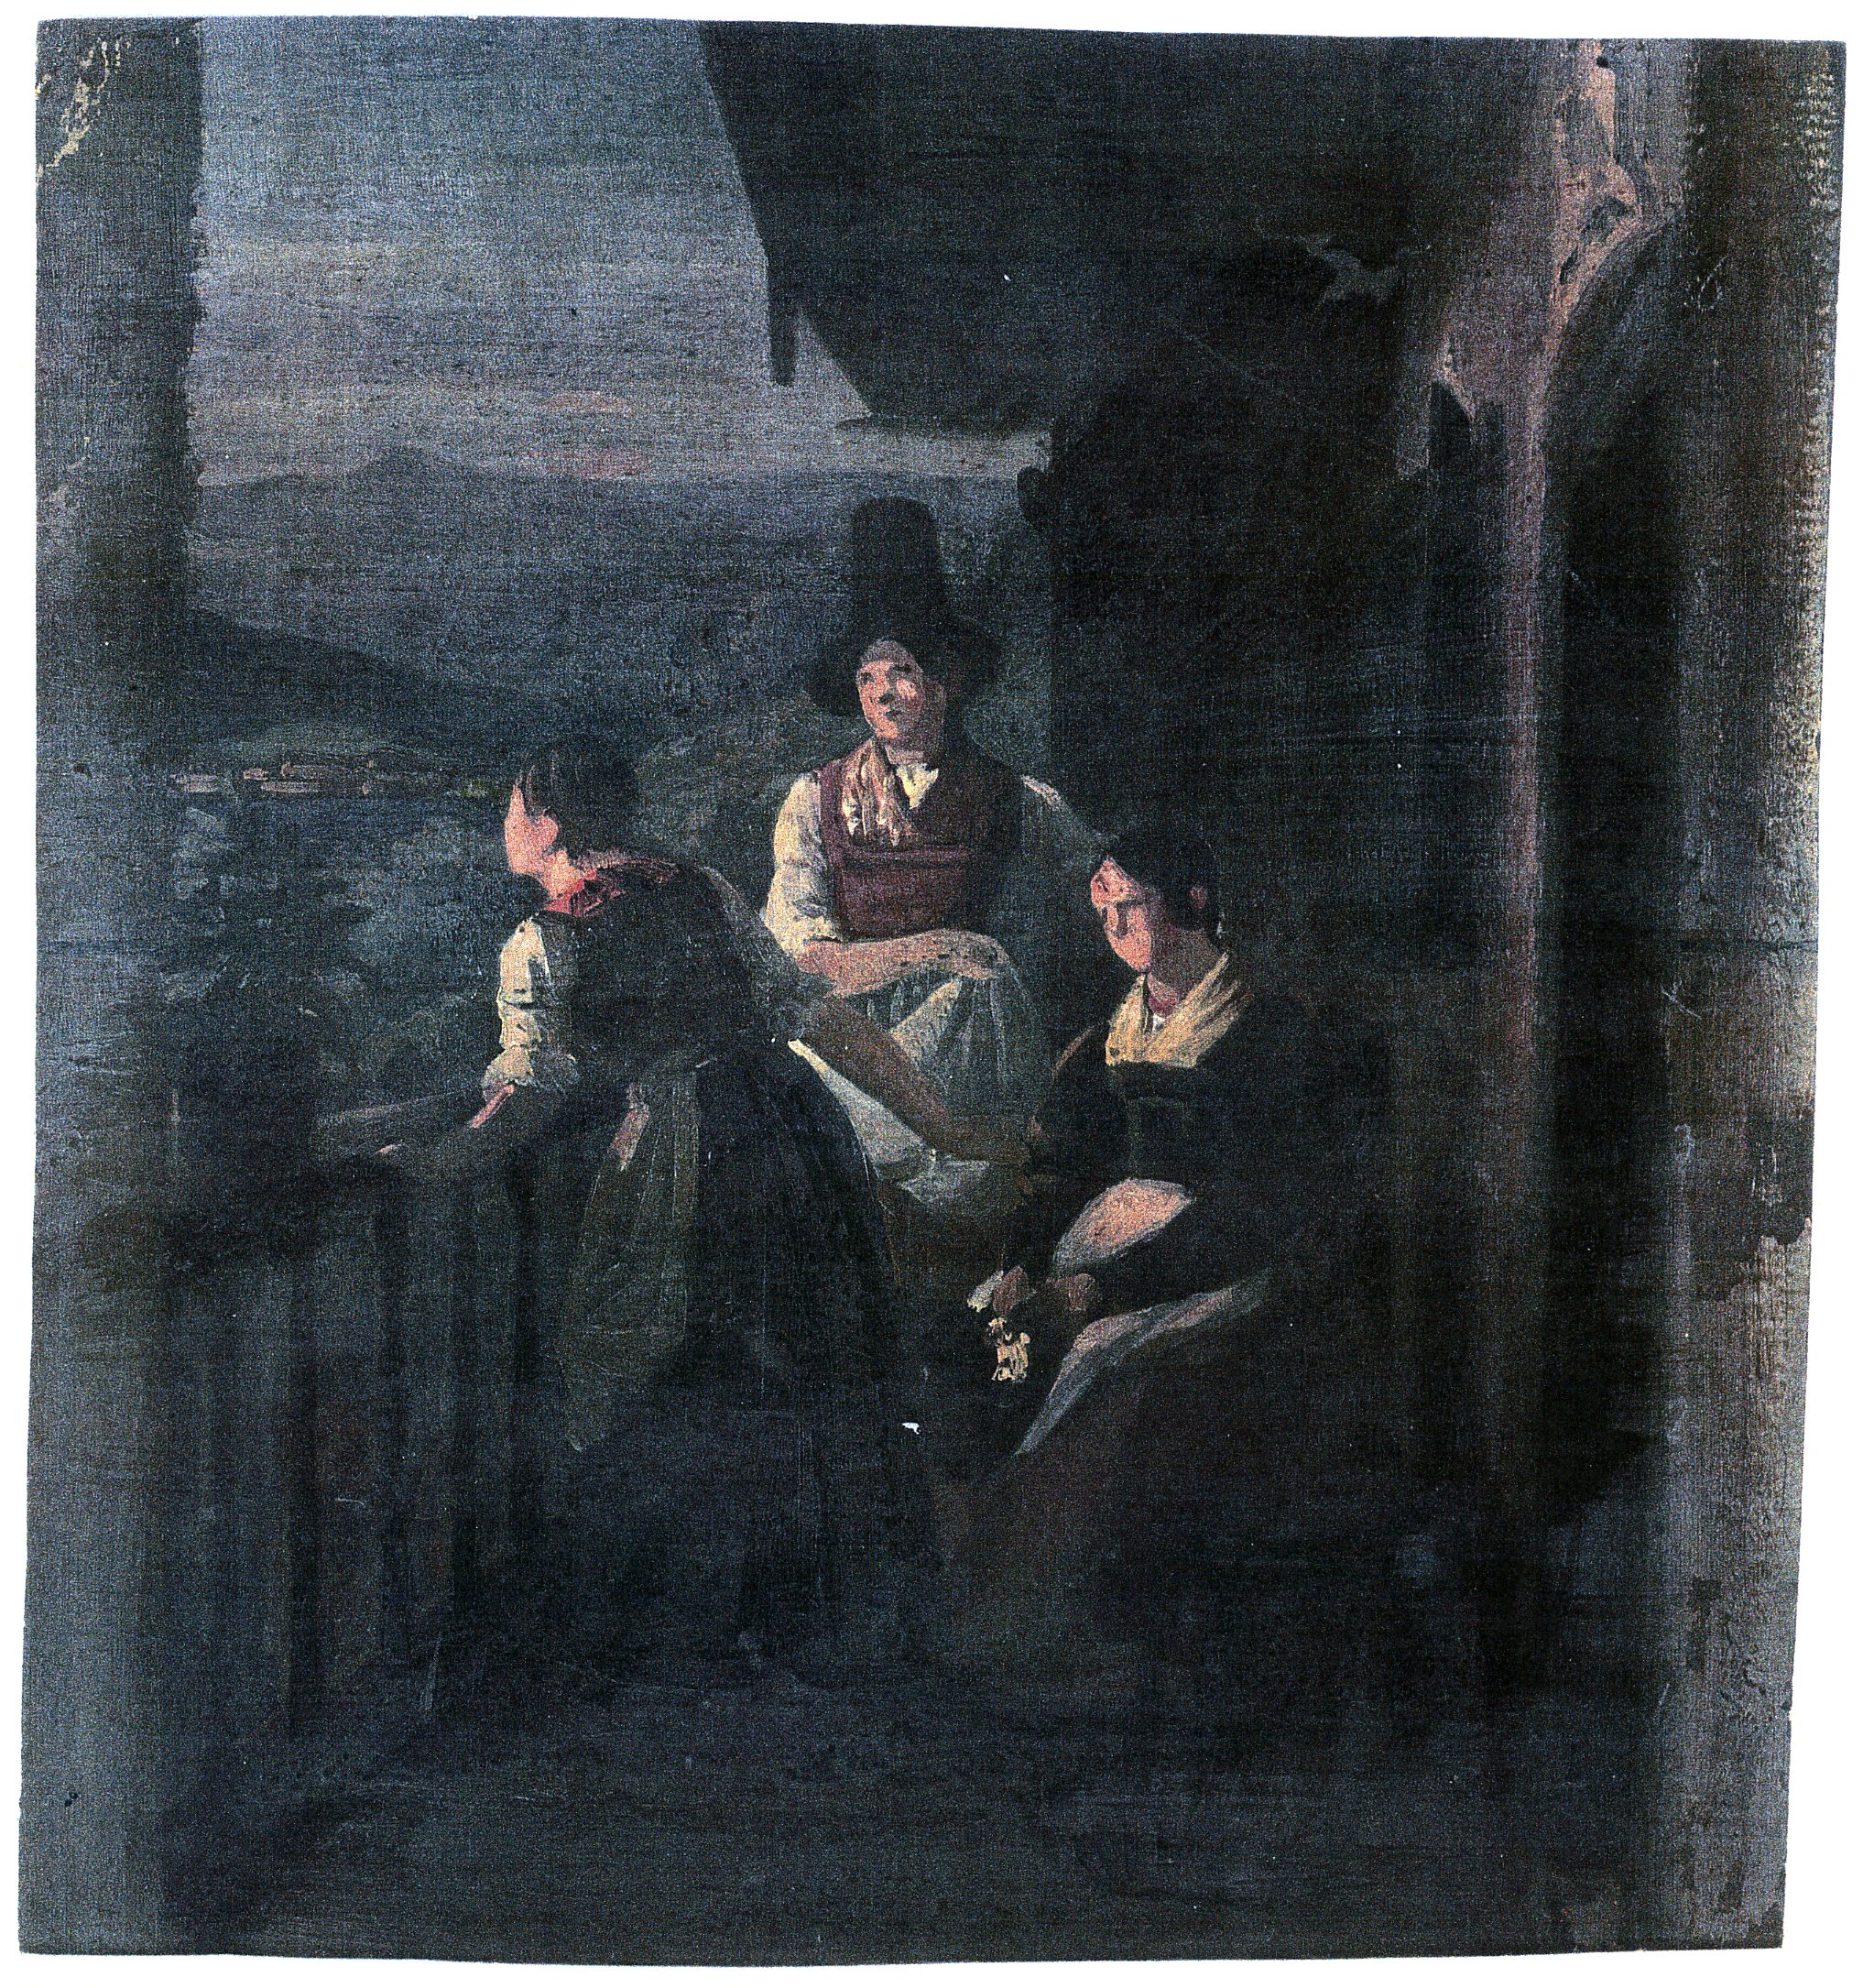 Ludwig Most, Wieczór w Tyrolu, studium do obrazu Wieczór w Tyrolu, 1842, olej na papierze, Muzeum Narodowe w Szczecinie